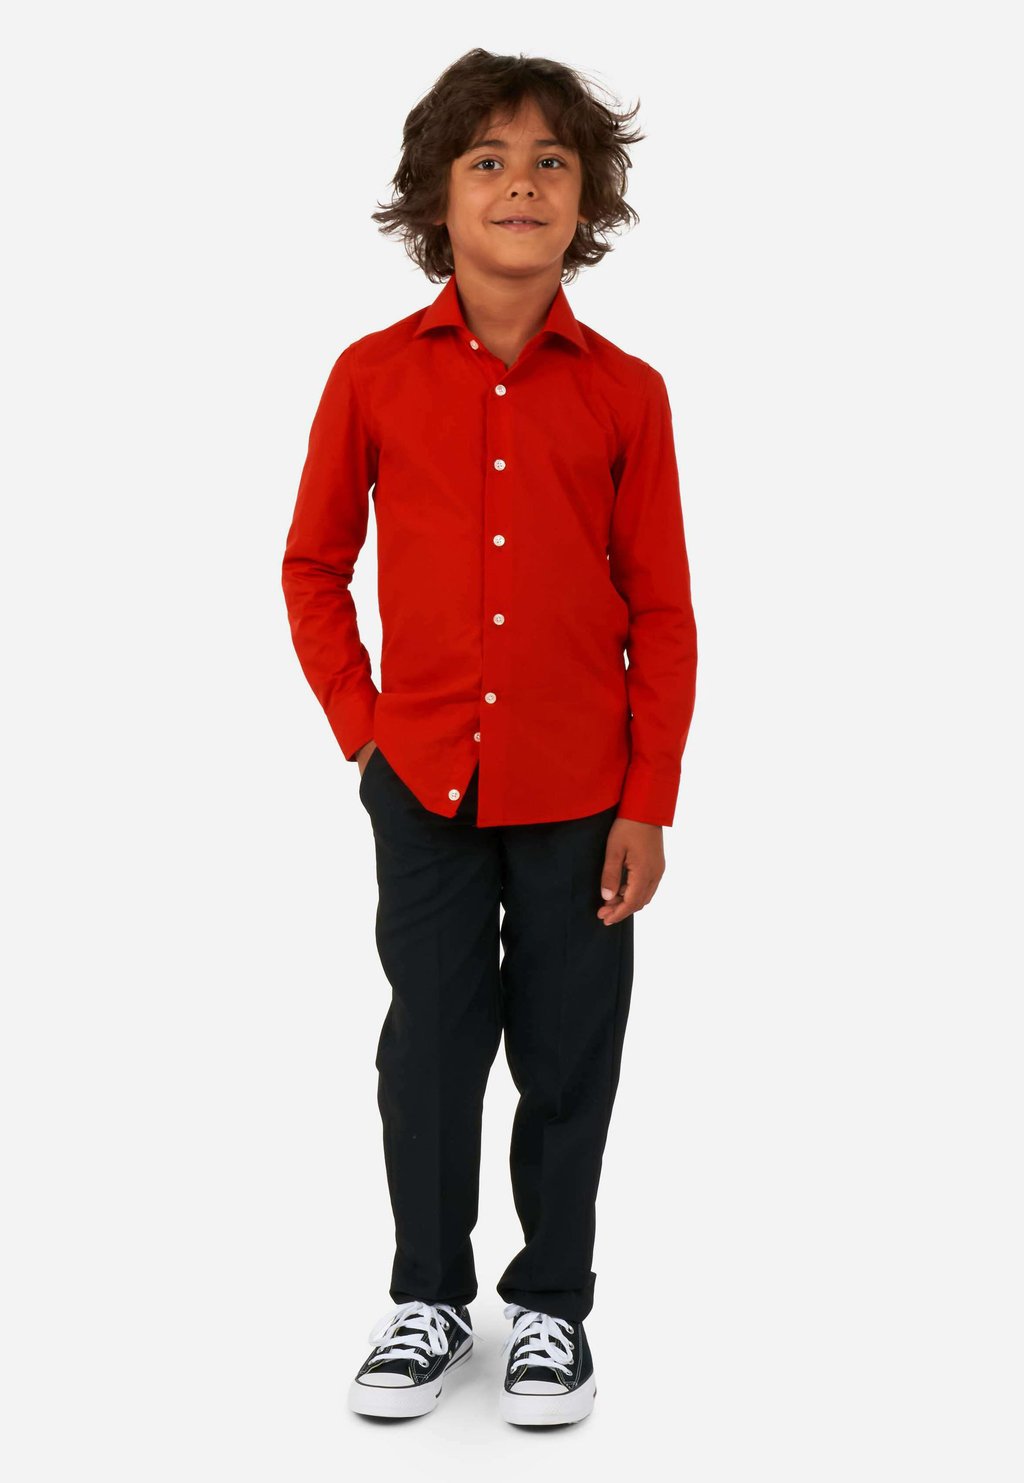 рубашка opposuits цвет red Рубашка OppoSuits, цвет red